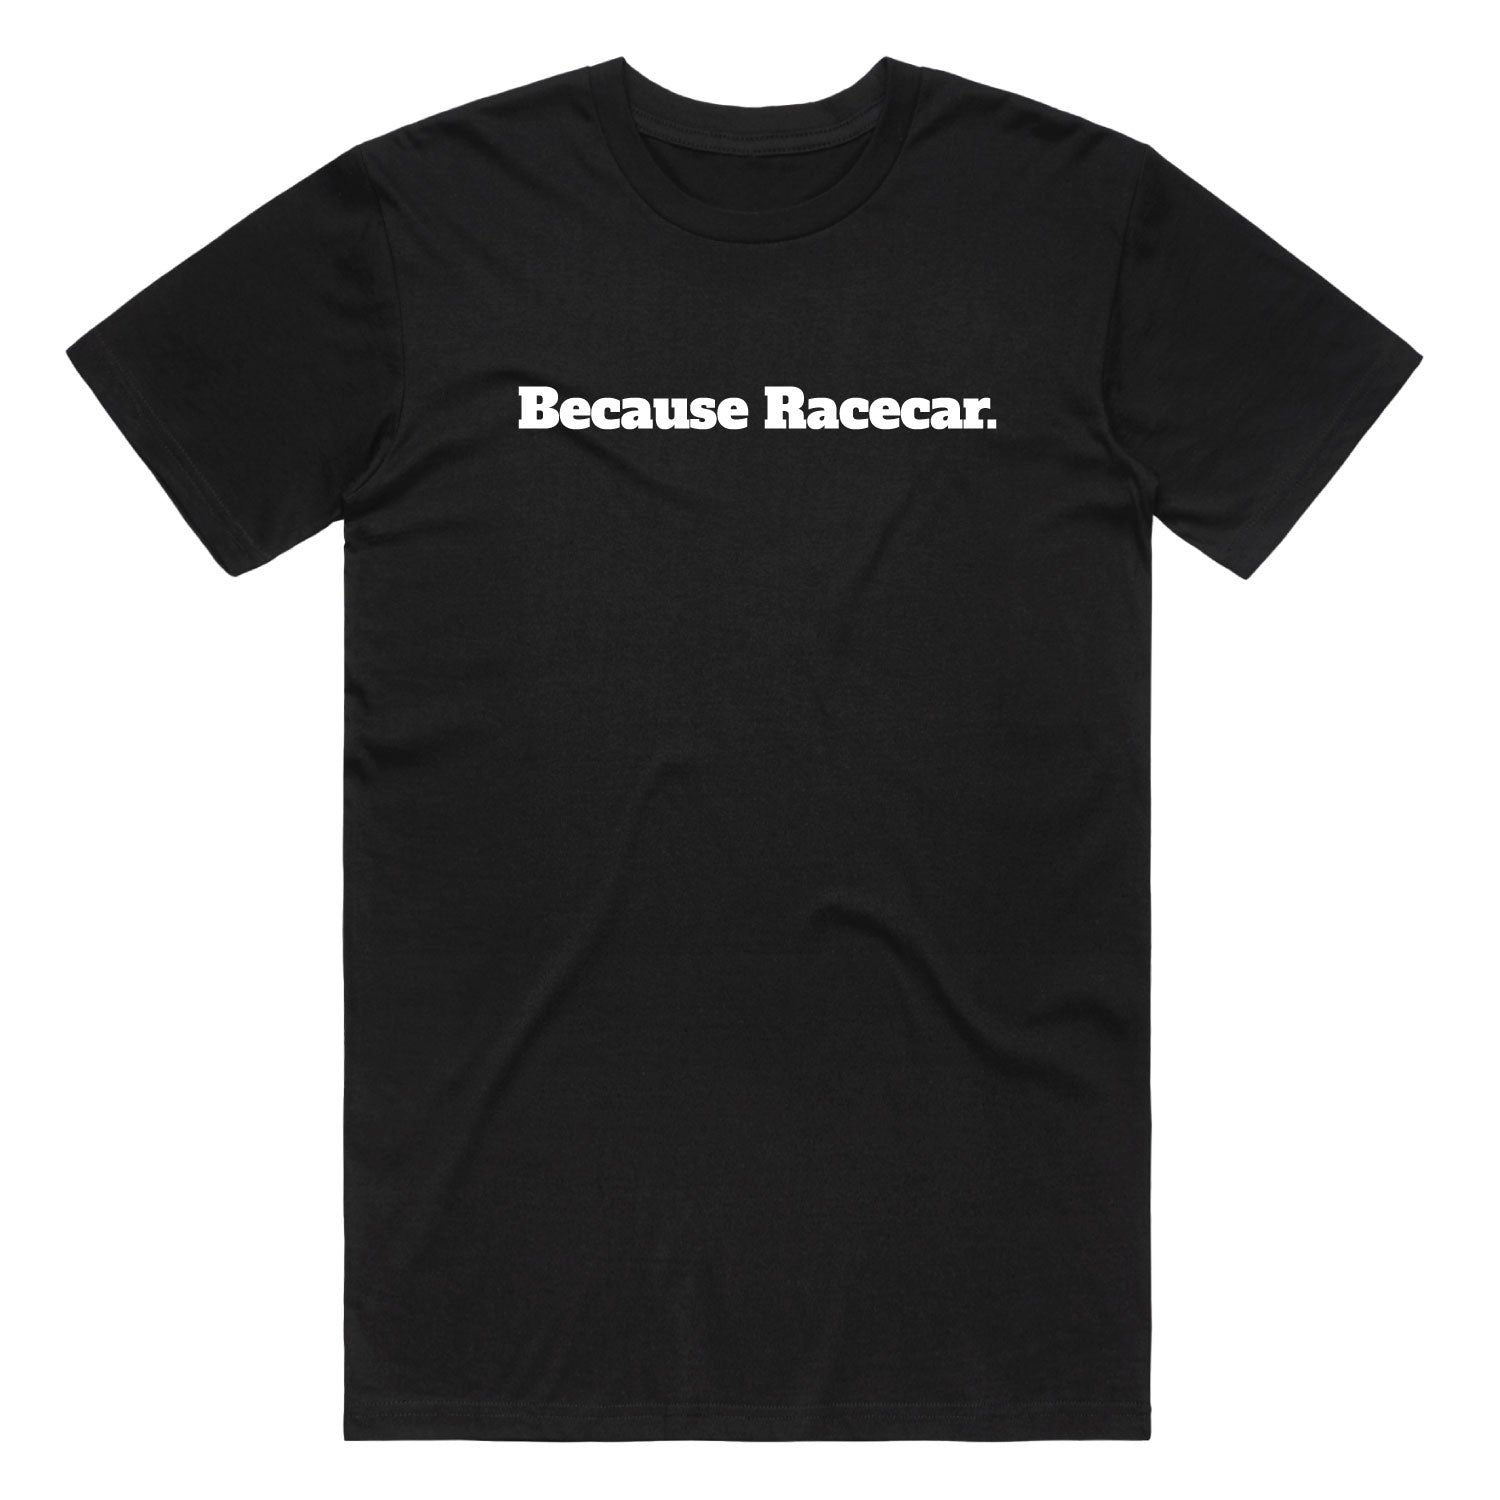 Because Racecar T-shirt